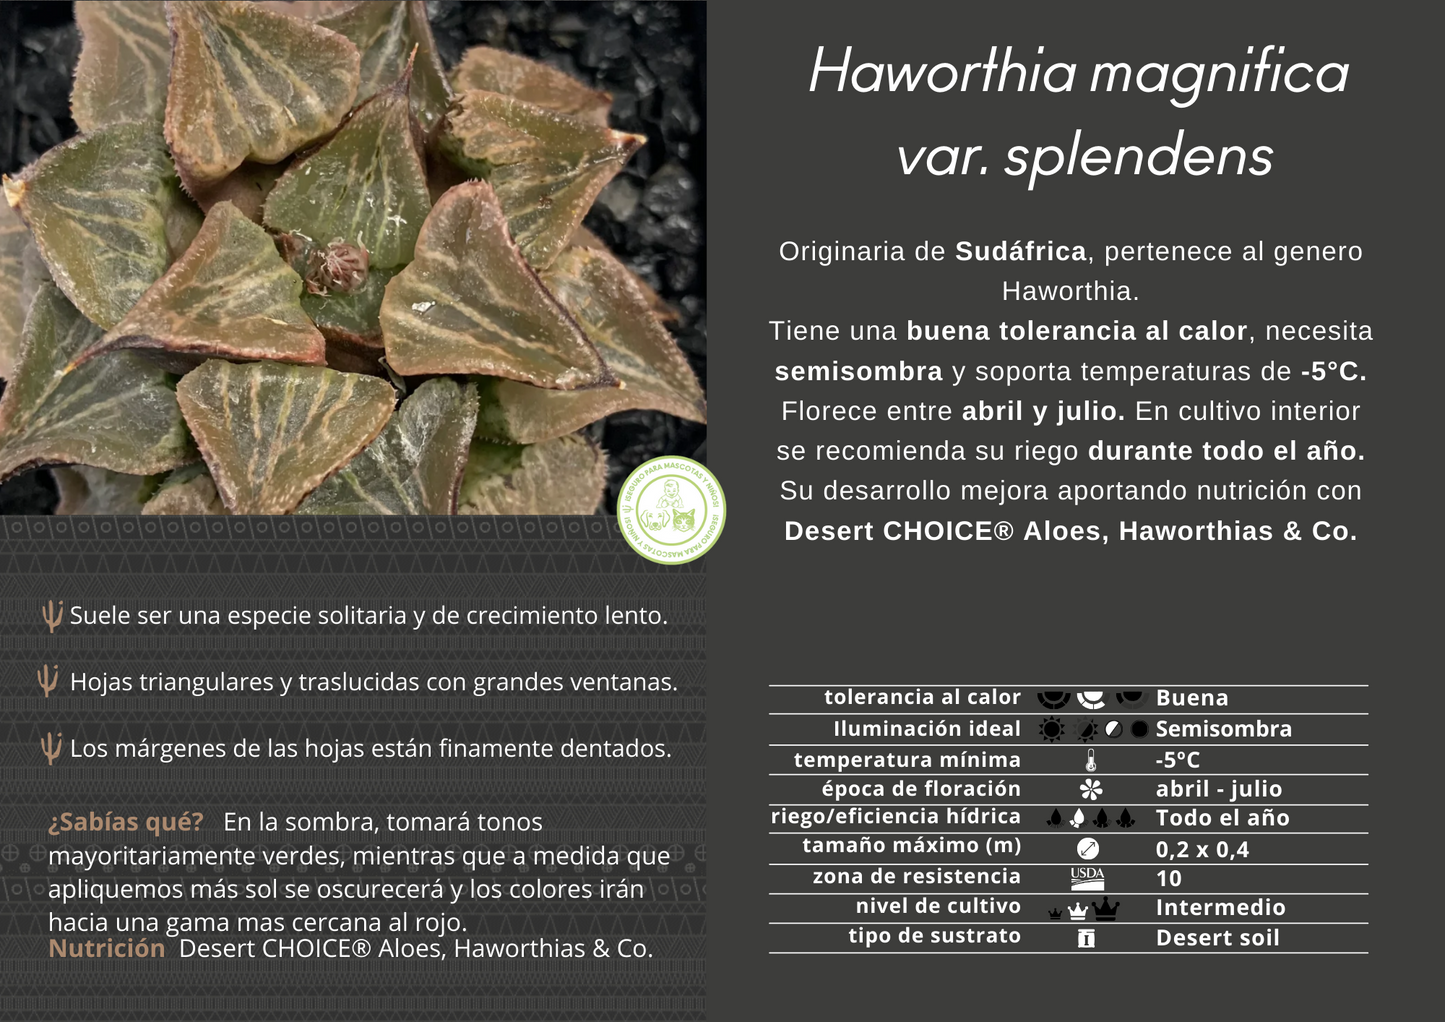 Haworthia magnifica var. splendens cv. Natalie